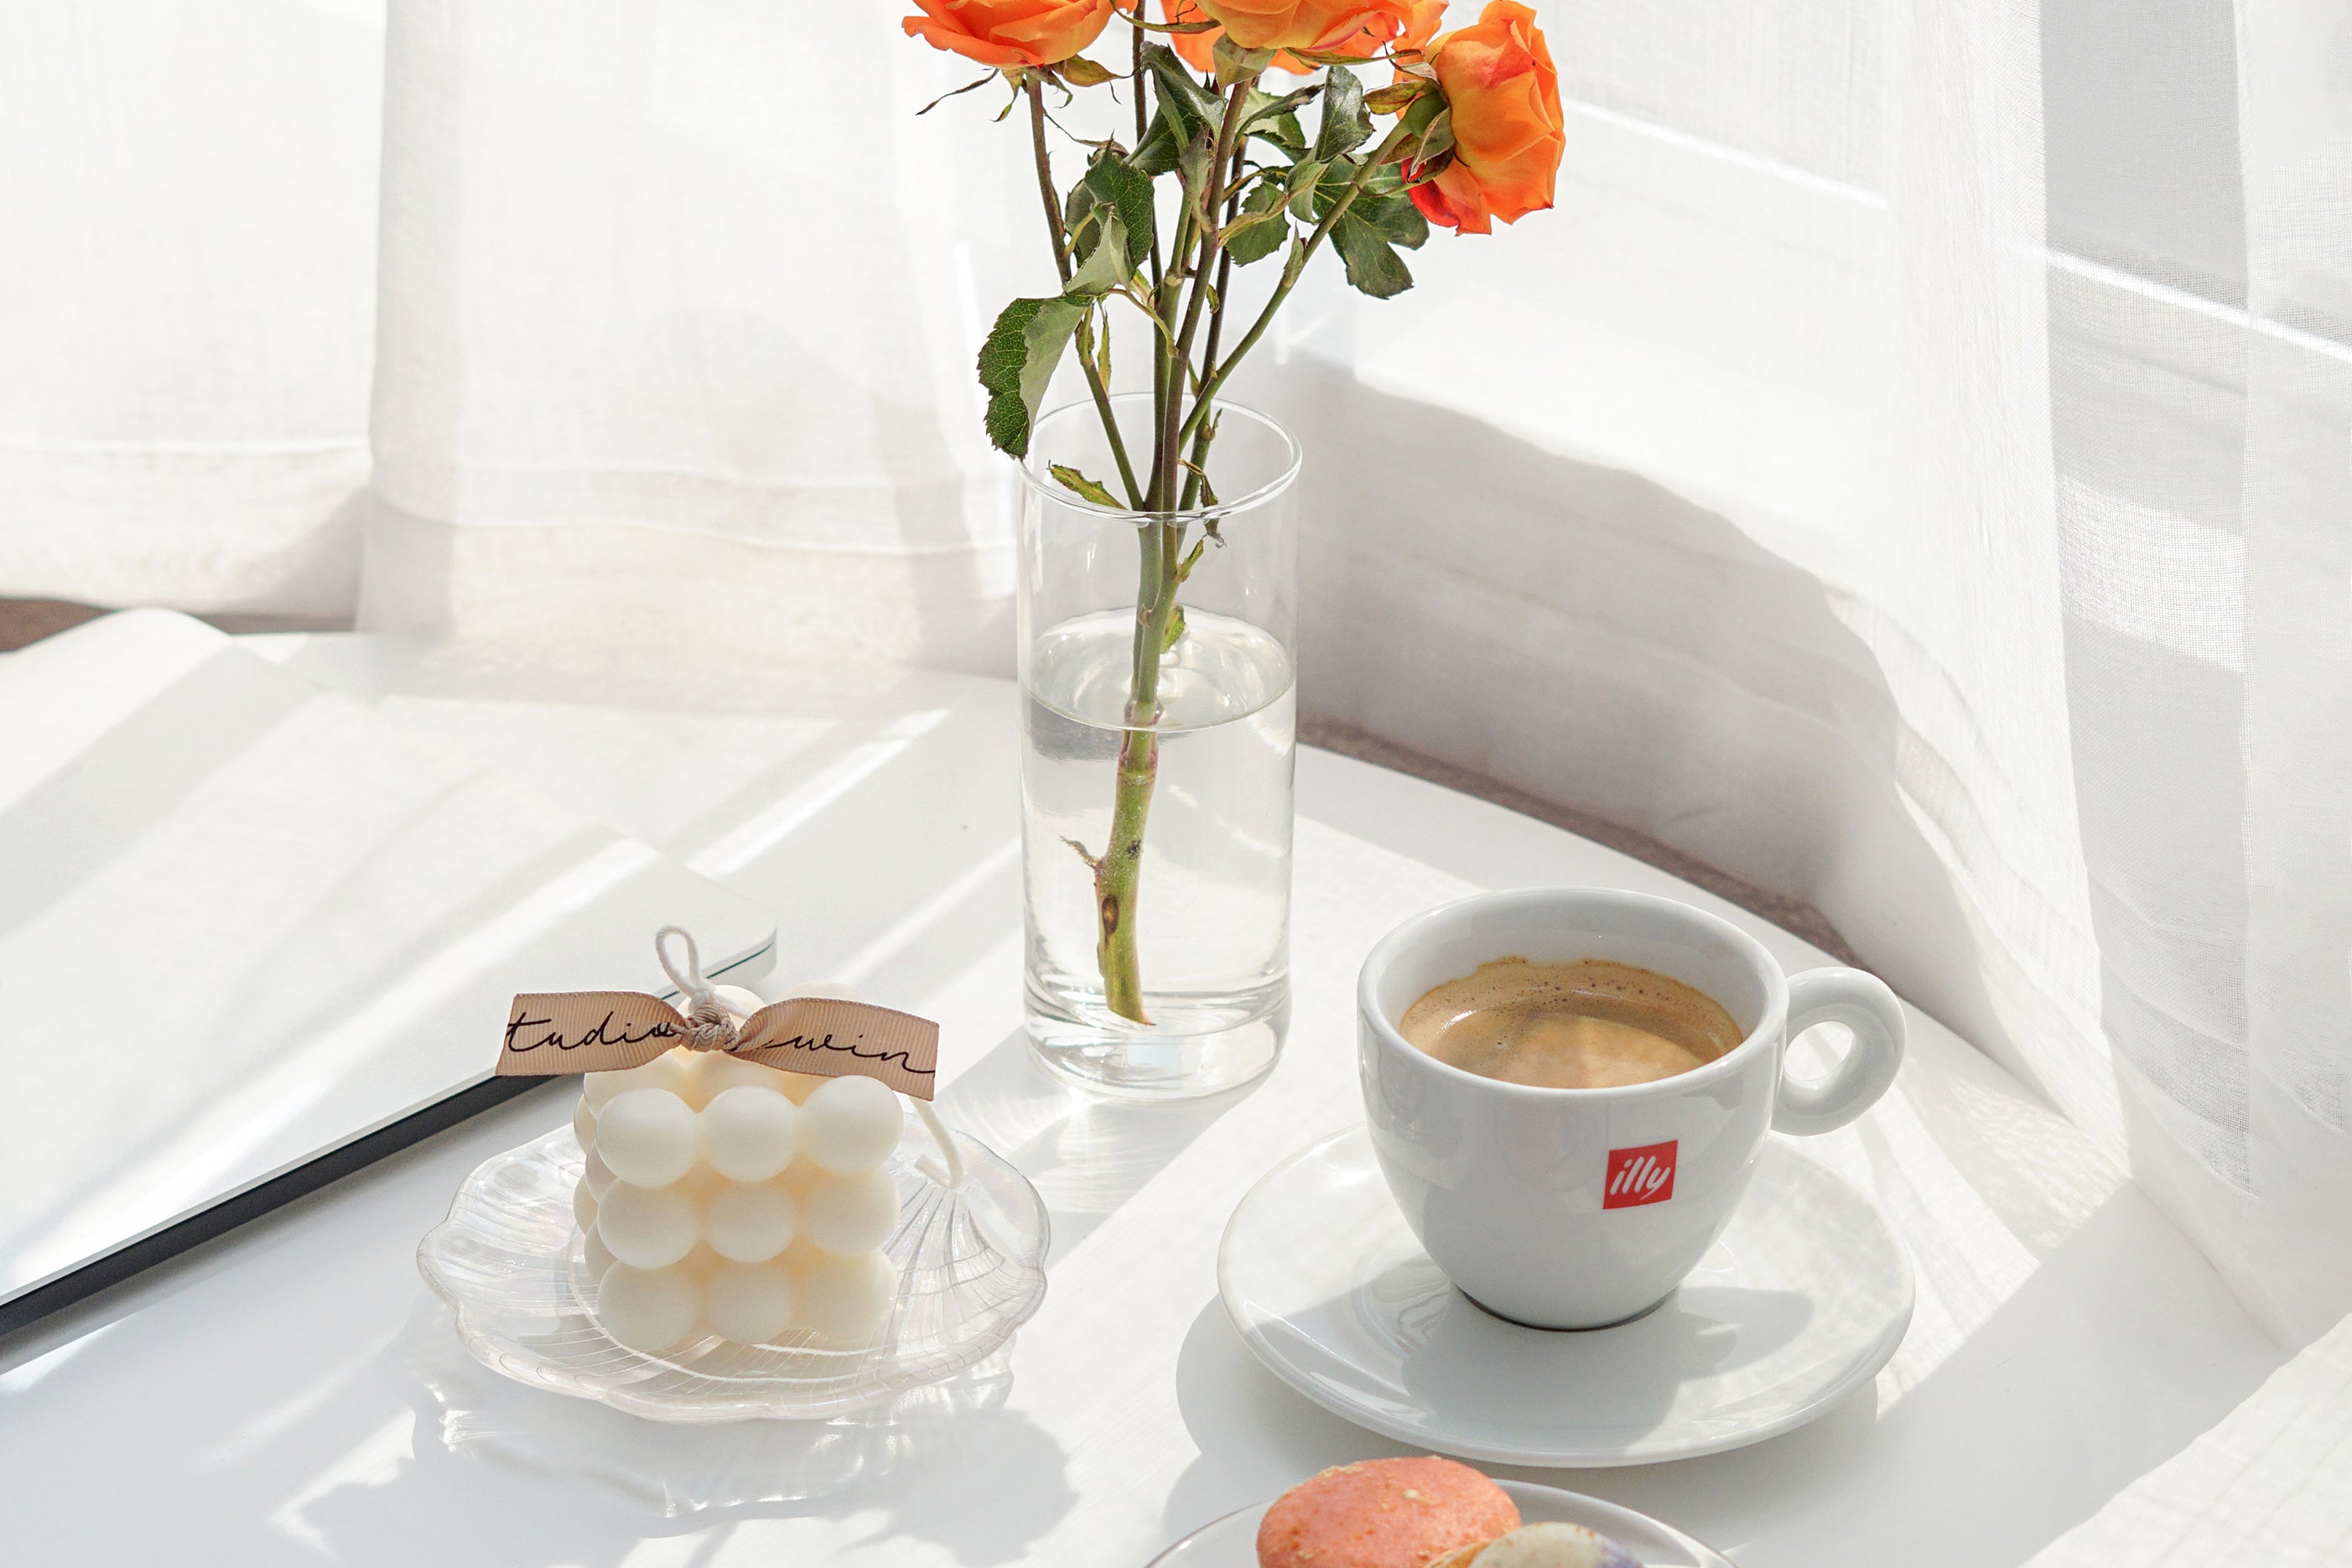 투명한 꽃병에 있는 오렌지색 장미, 홀로그램 쉘 트레이에 있는 큐브 캔들, 커피 한 잔, 흰색 원형 테이블에 있는 노트북